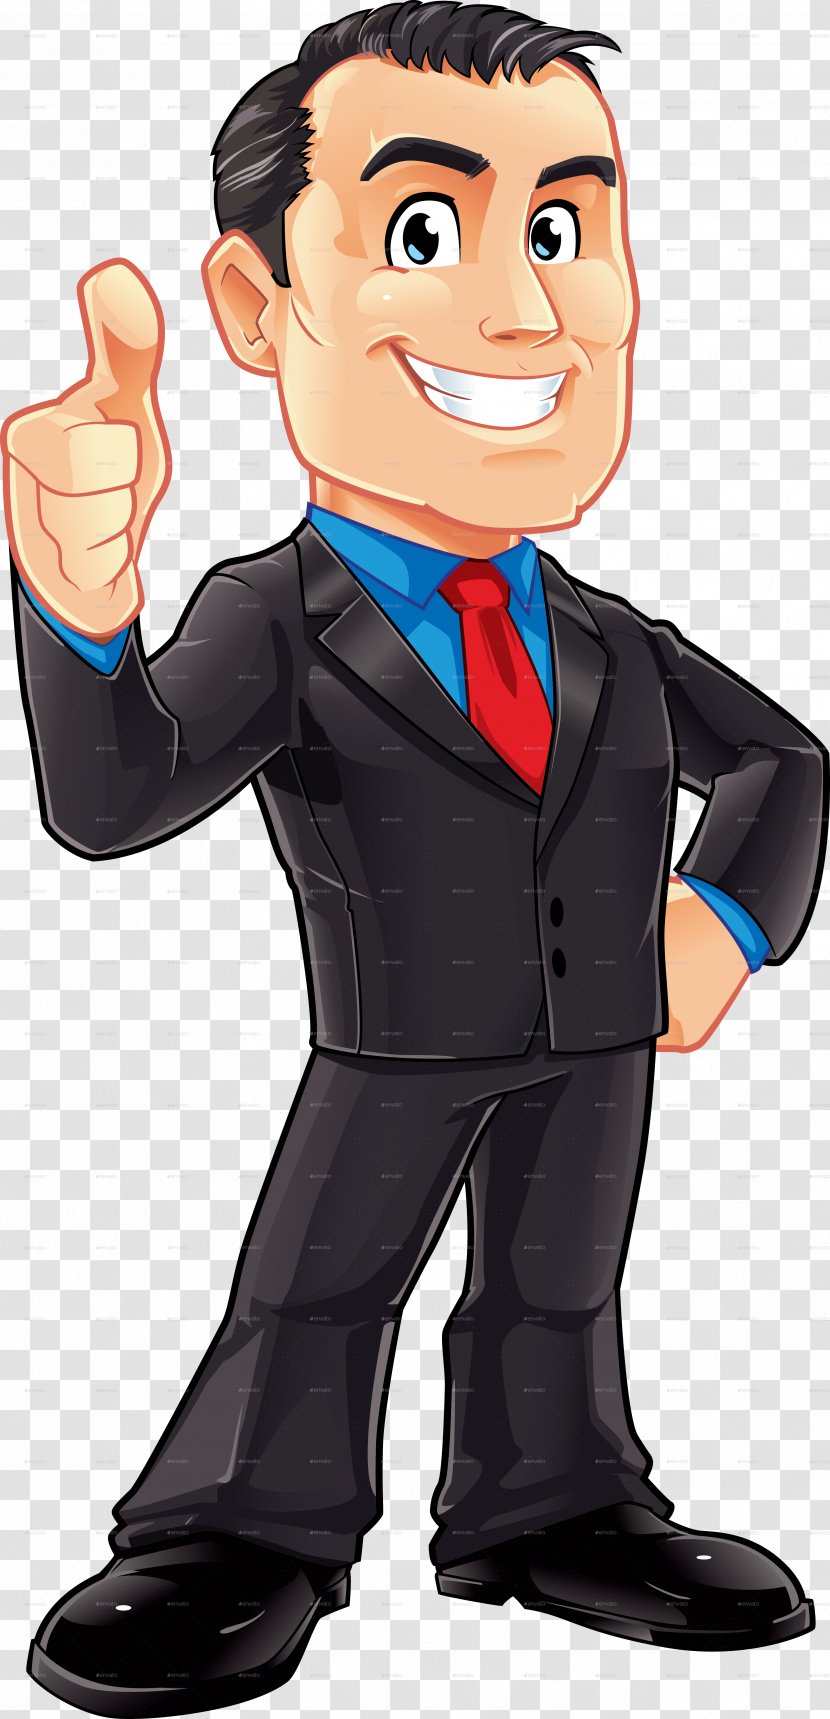 Cartoon Businessperson Male Clip Art - Business - Businessman